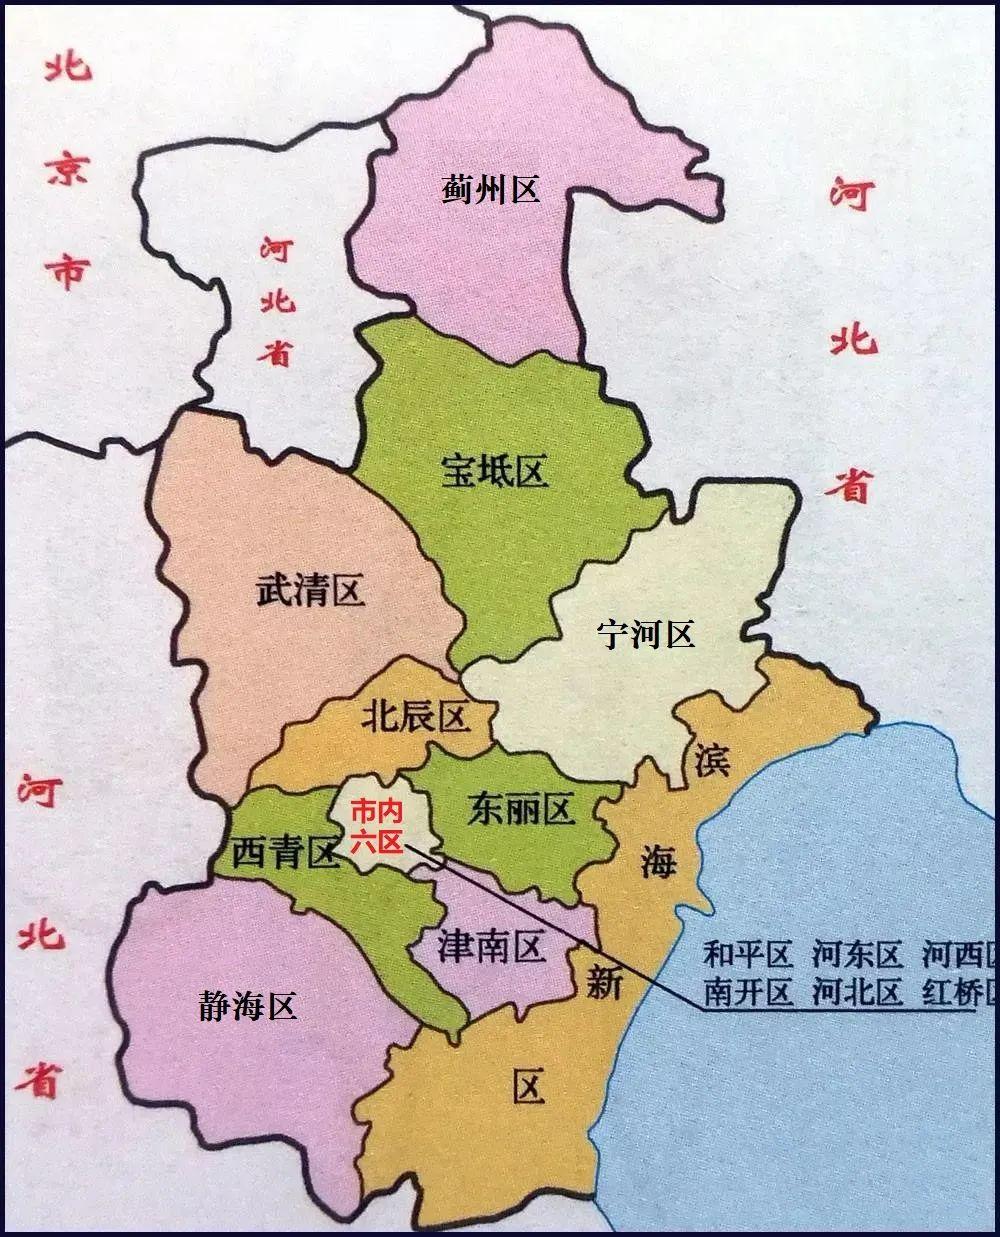 目前,天津市共下辖16个市辖区,面积为11760